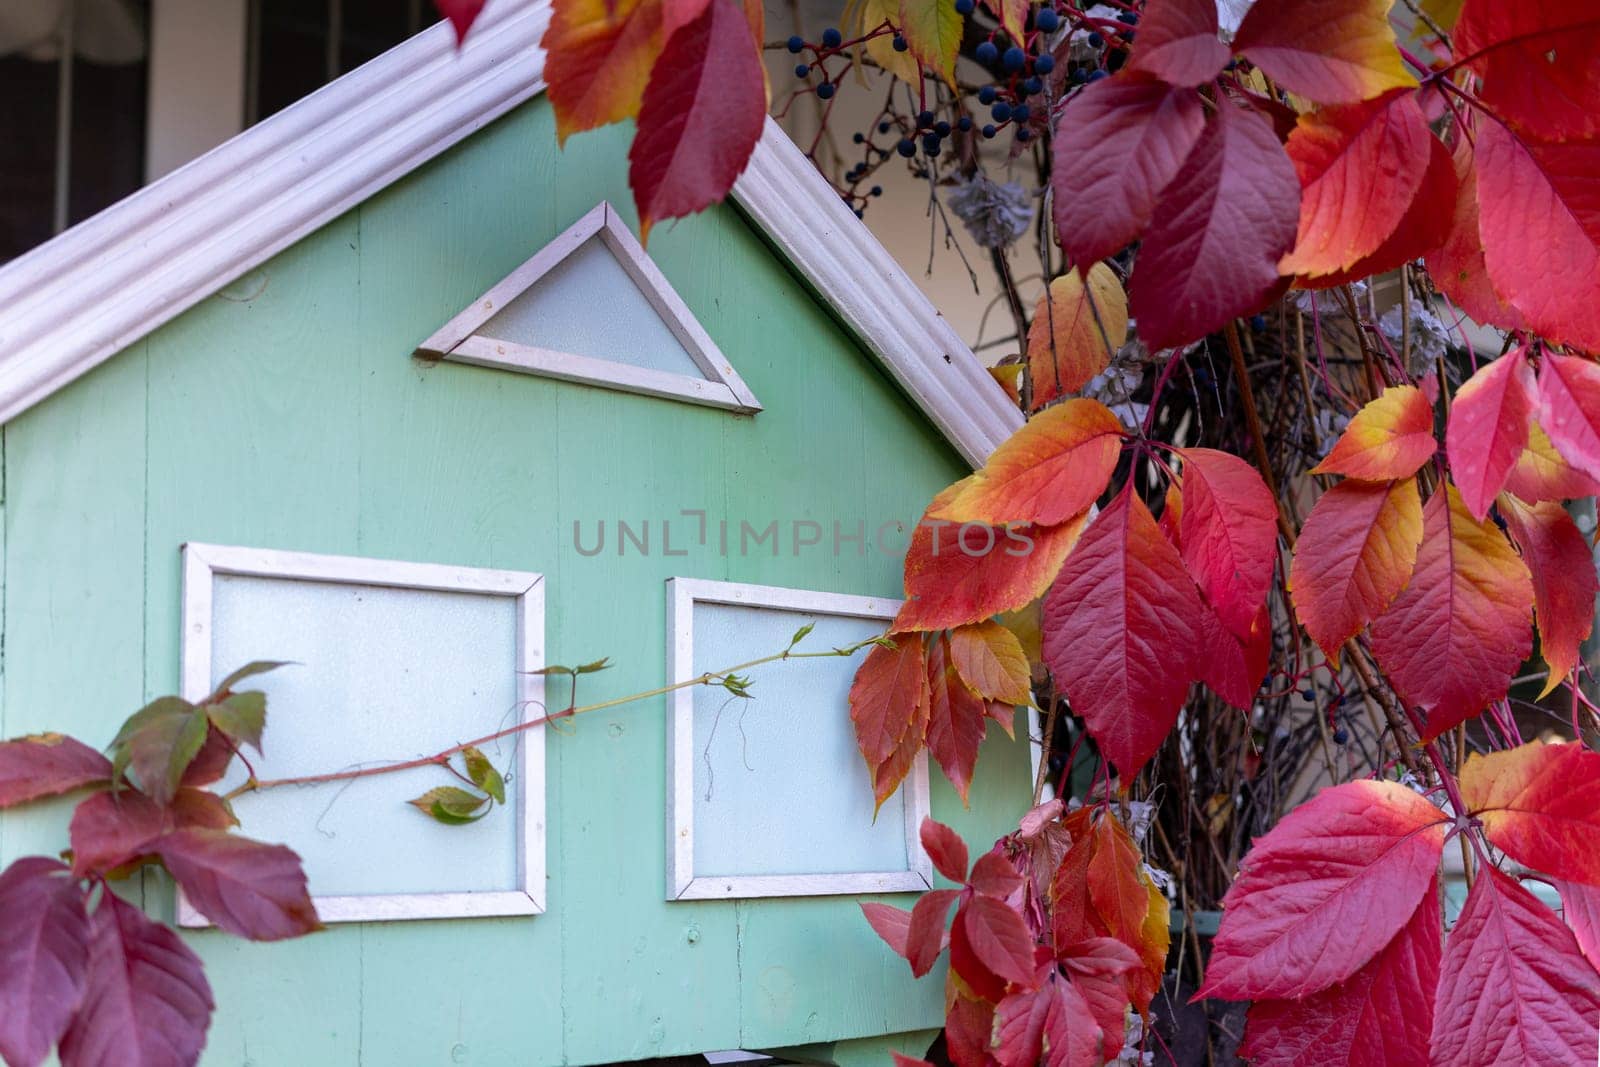 Decorative wooden house in the autumn garden by Serhii_Voroshchuk